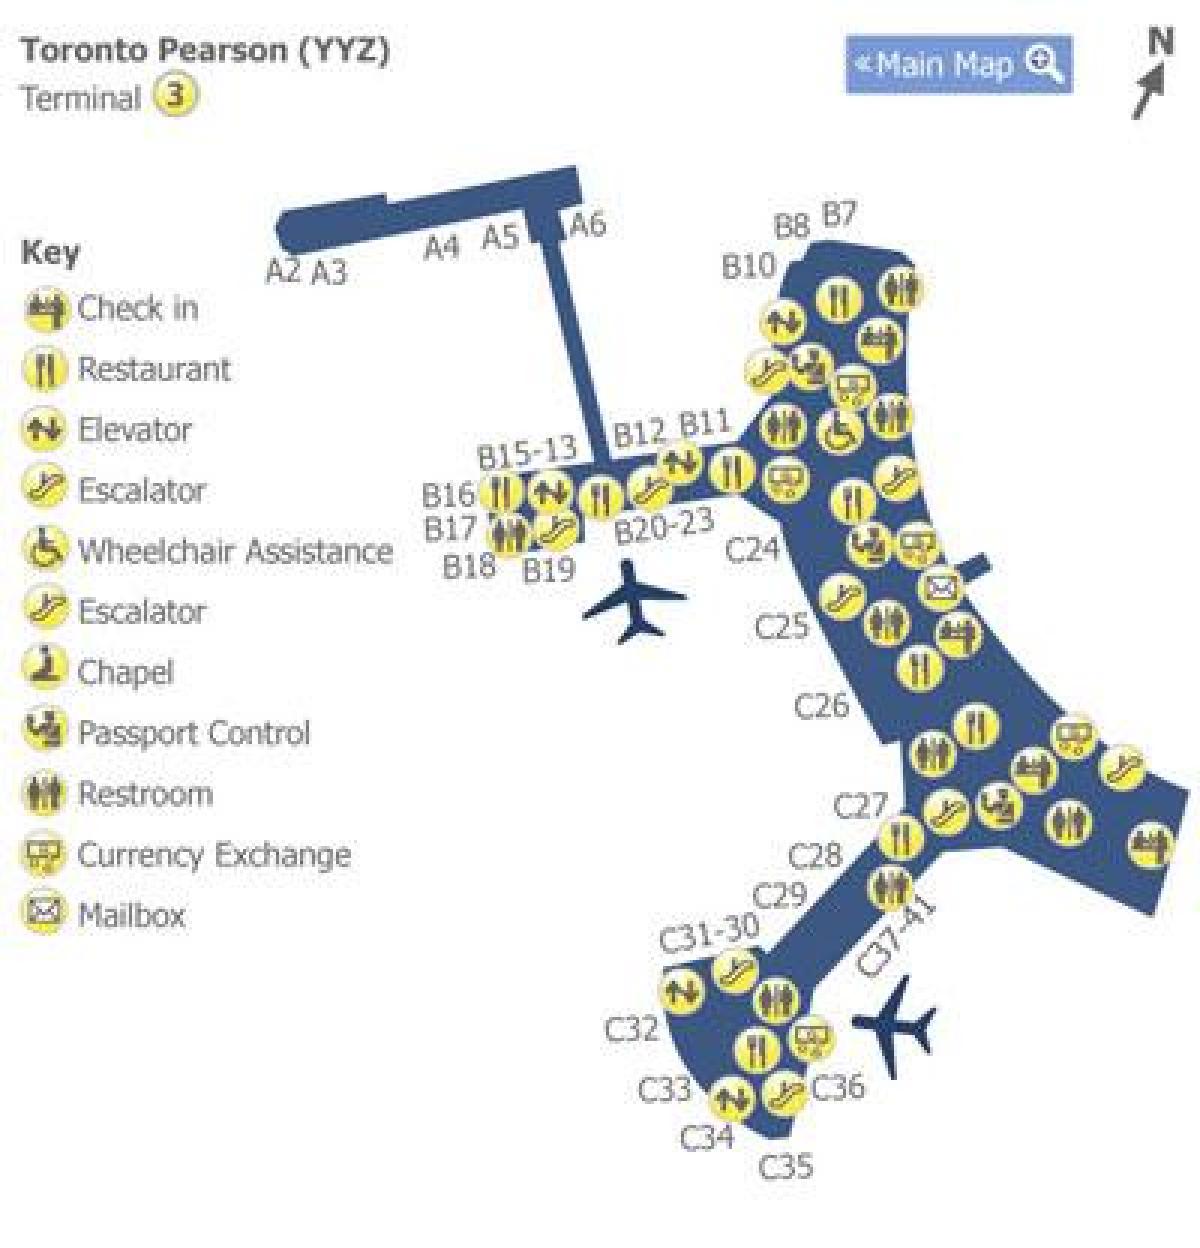 Mappa di Toronto Pearson airport terminal 3